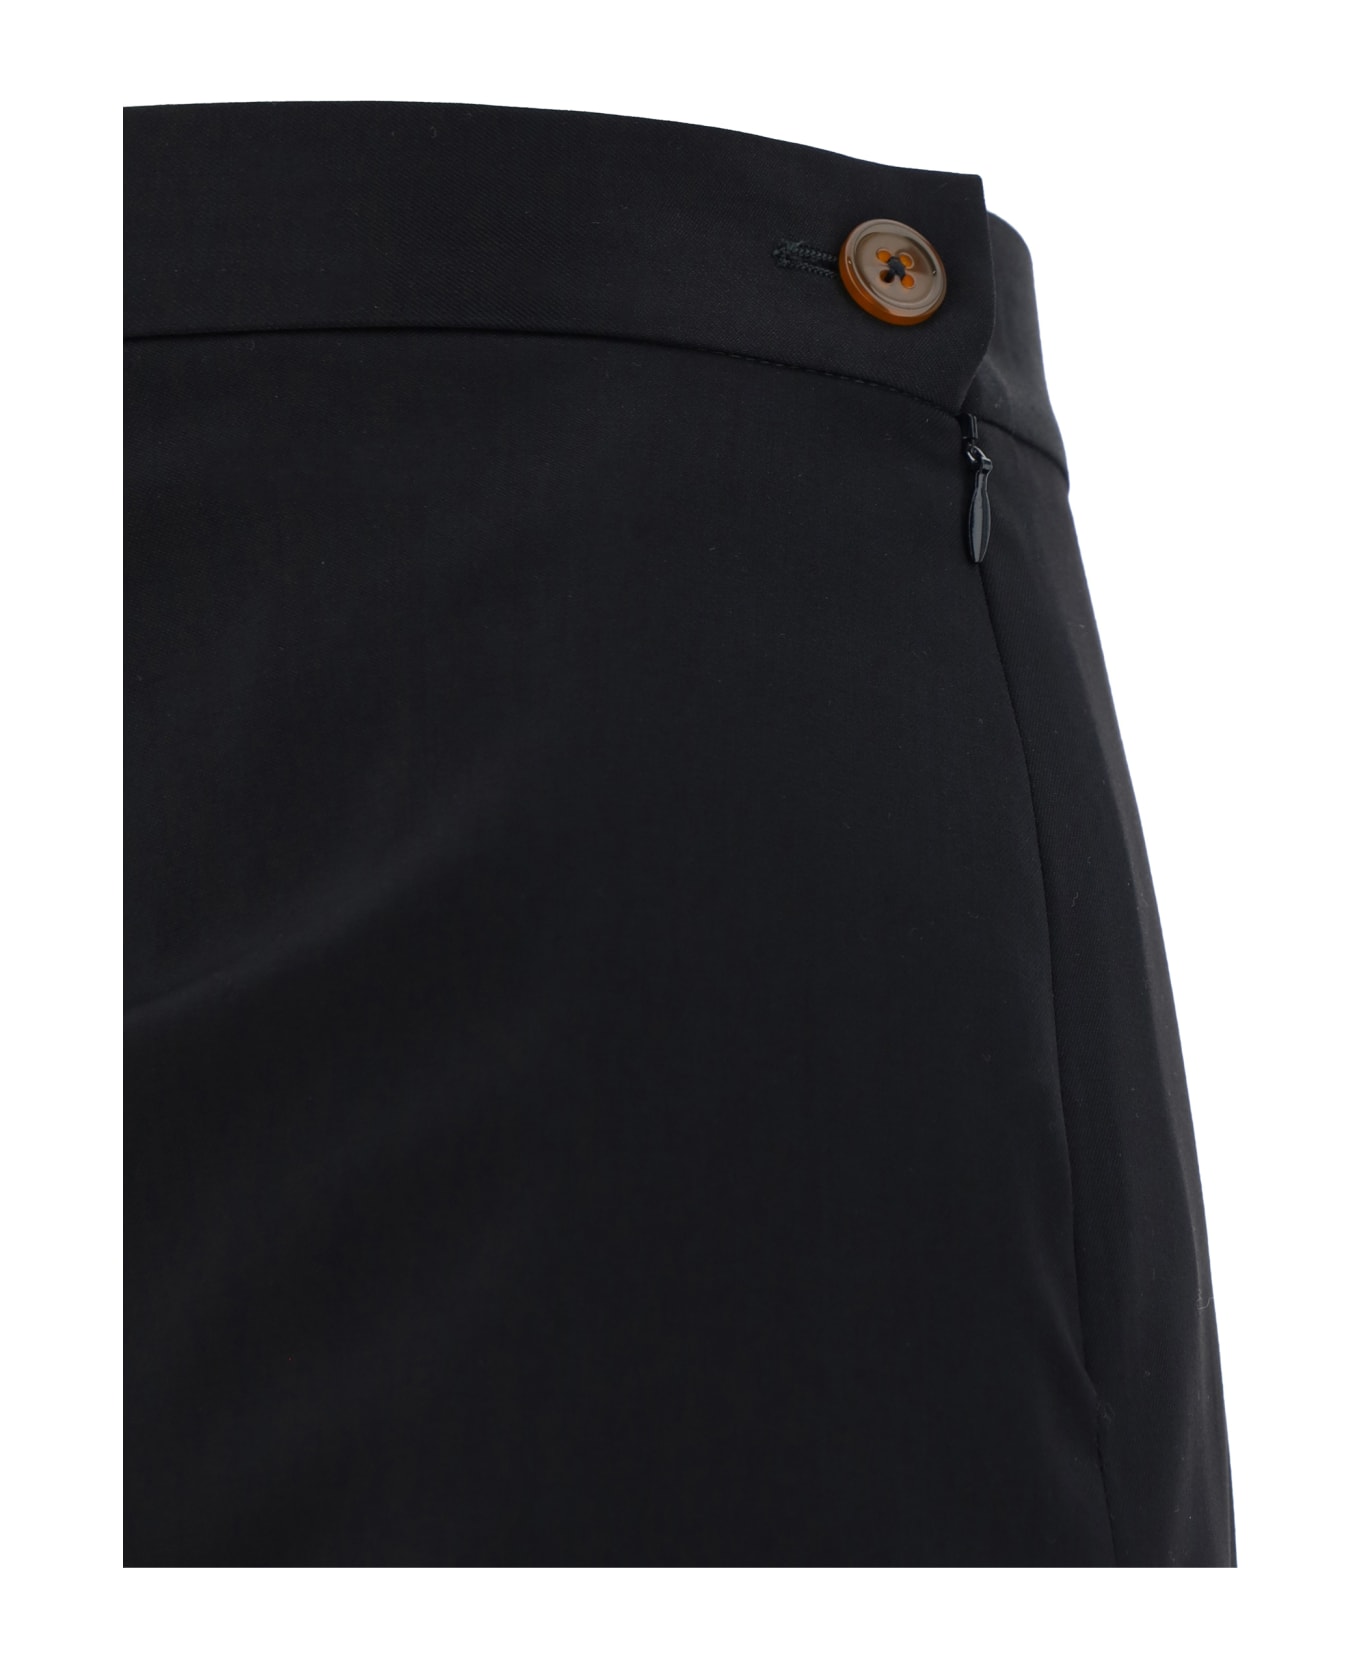 Vivienne Westwood Long Skirt - Black